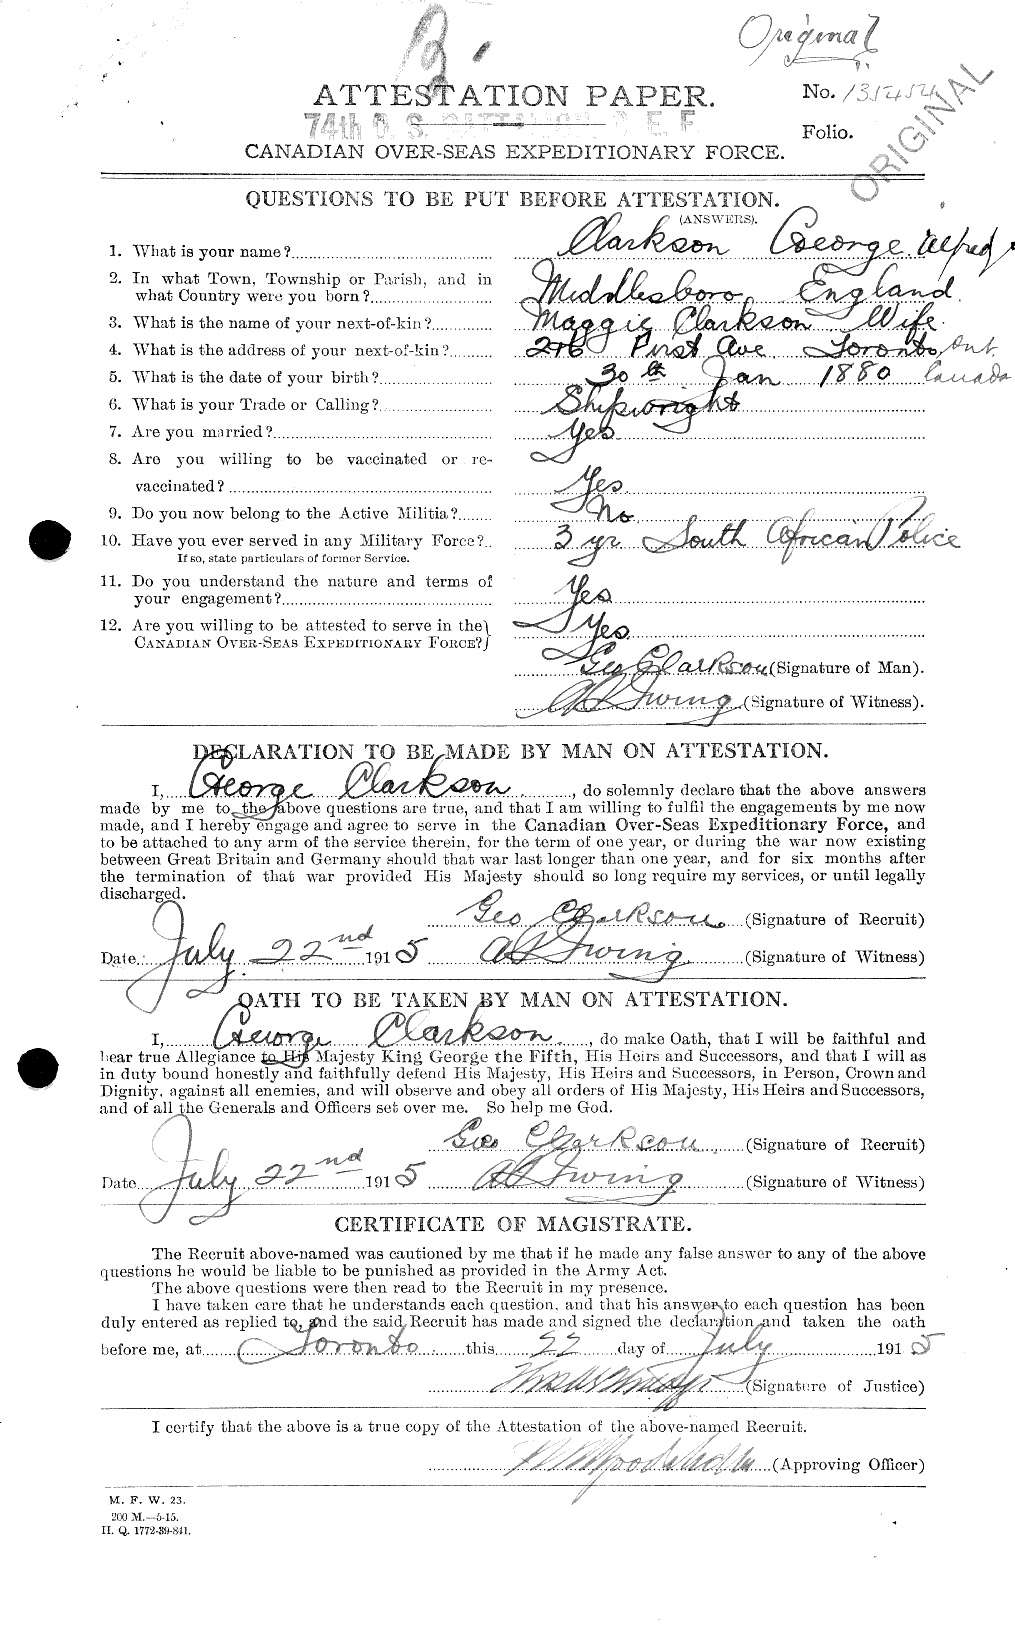 Dossiers du Personnel de la Première Guerre mondiale - CEC 021429a